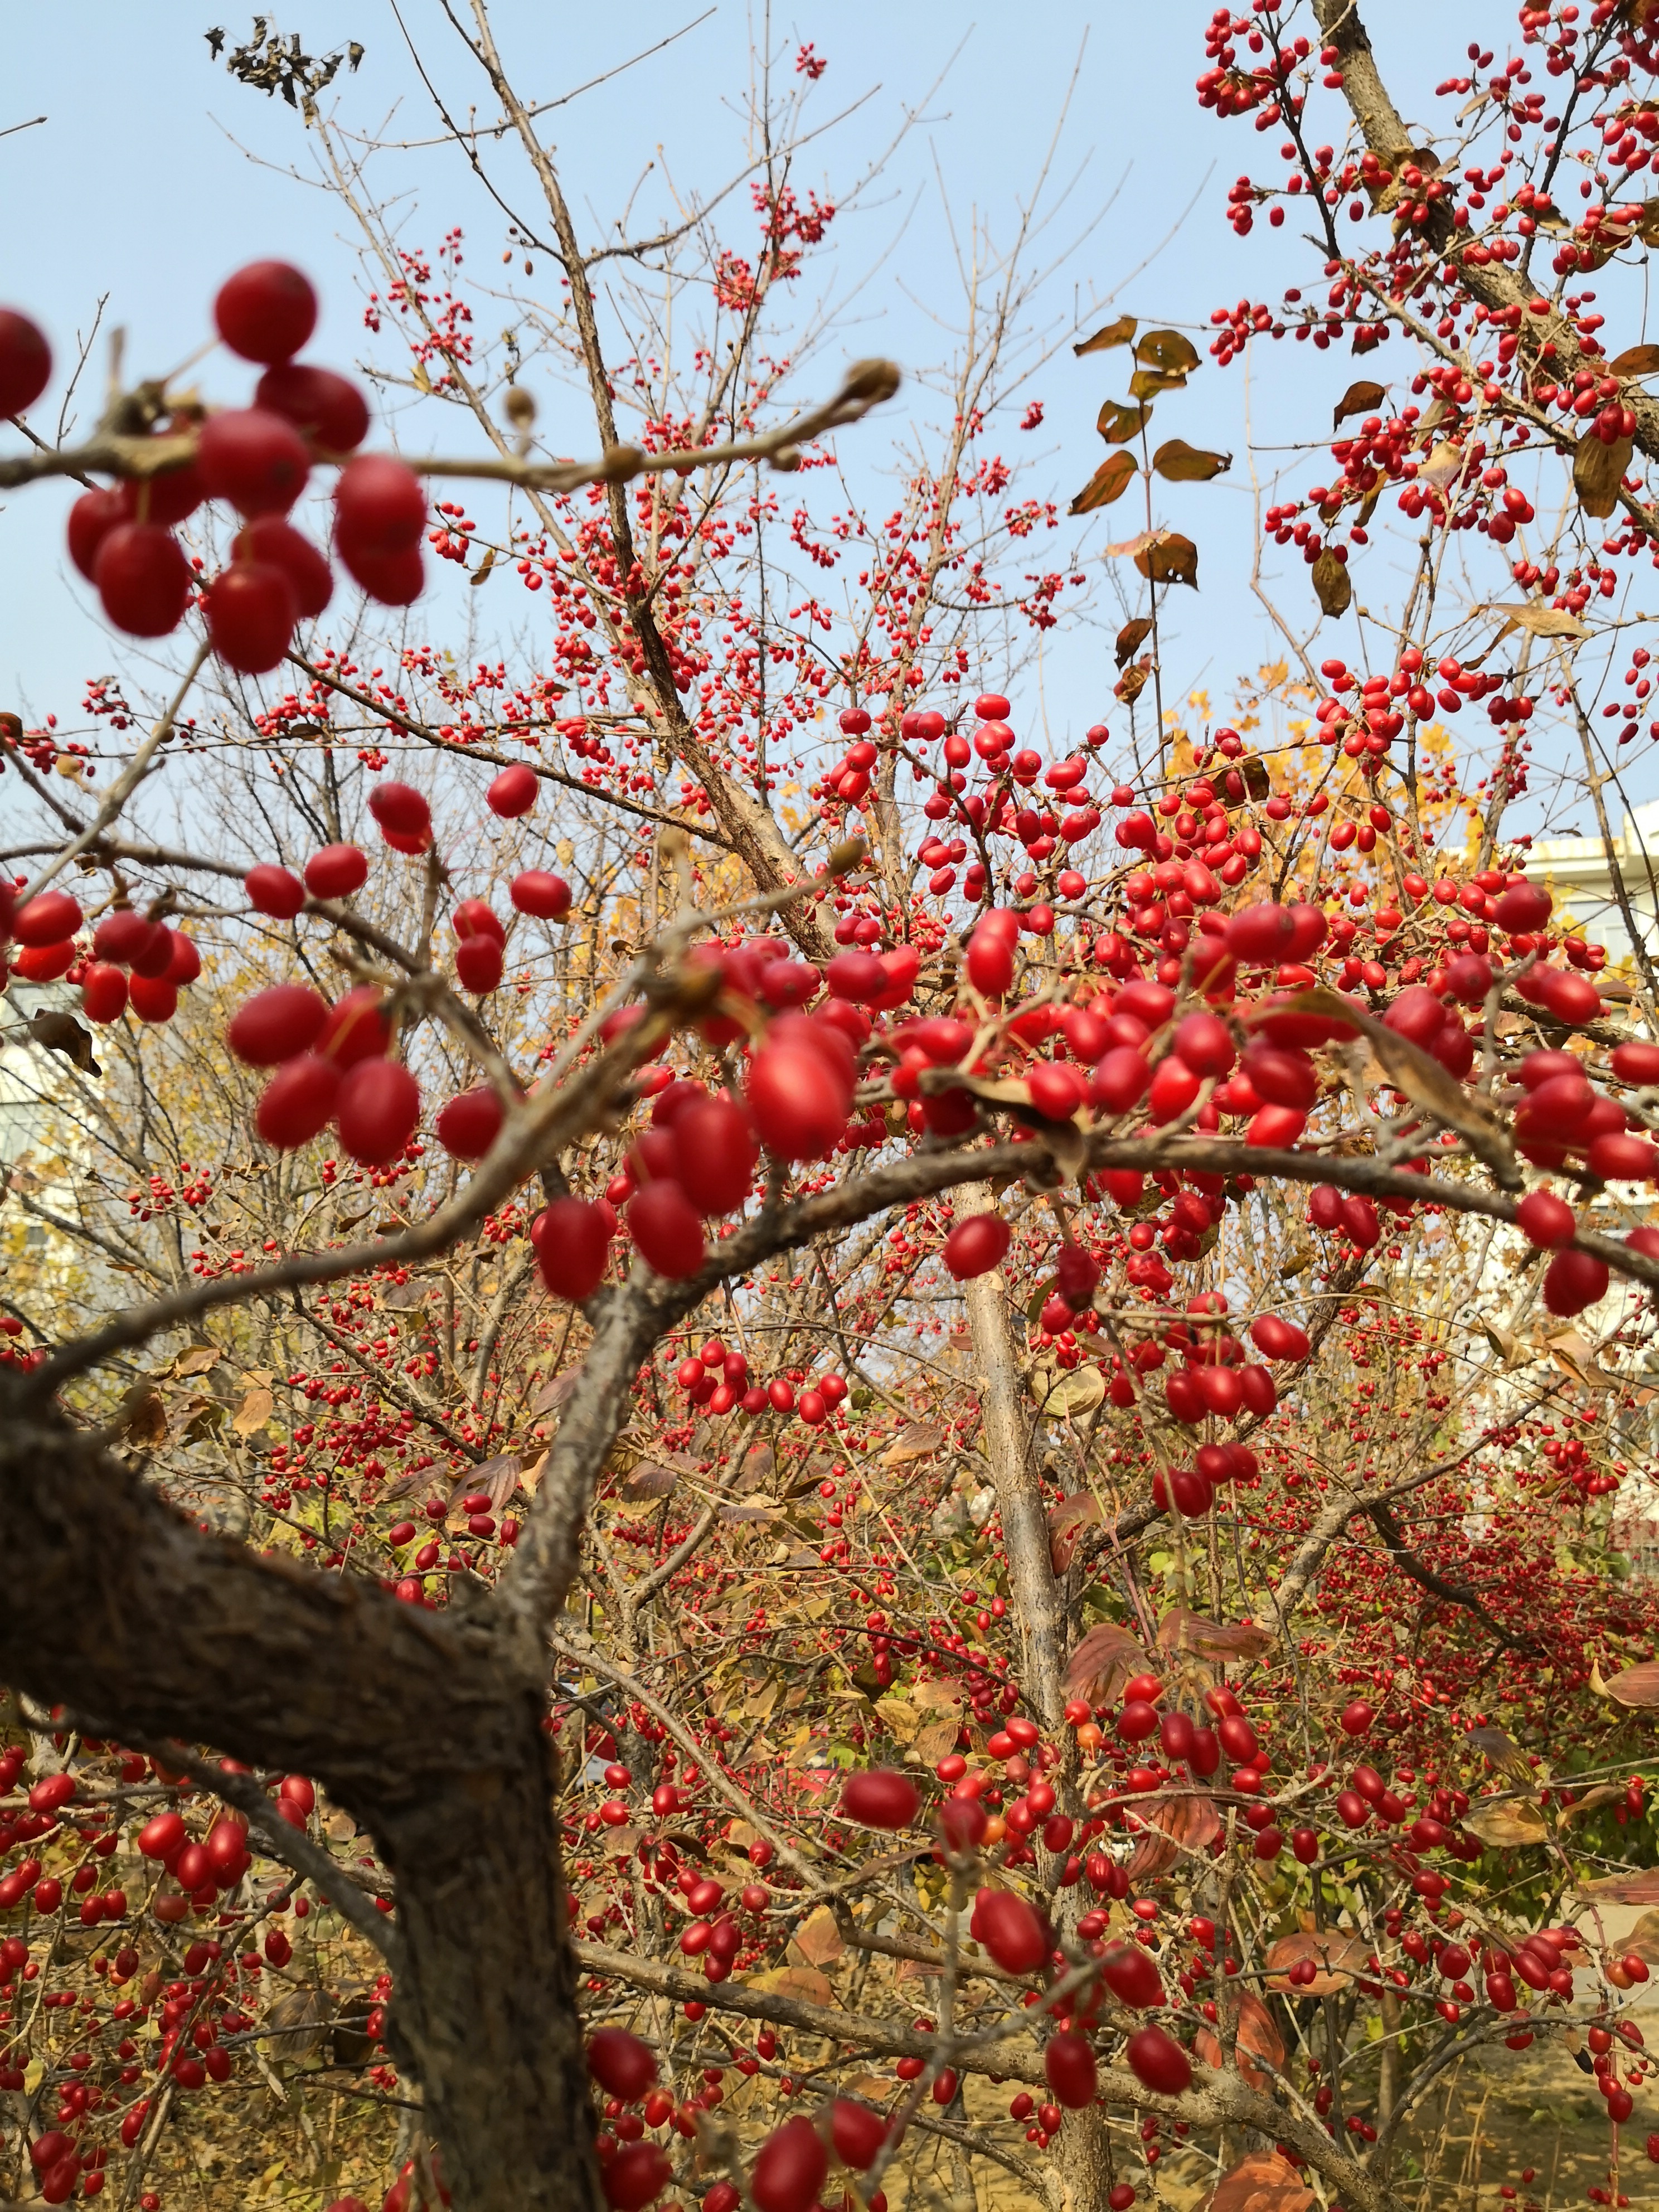 冬赏山茱萸,枝无叶果更红,芽苞蓄势待春风